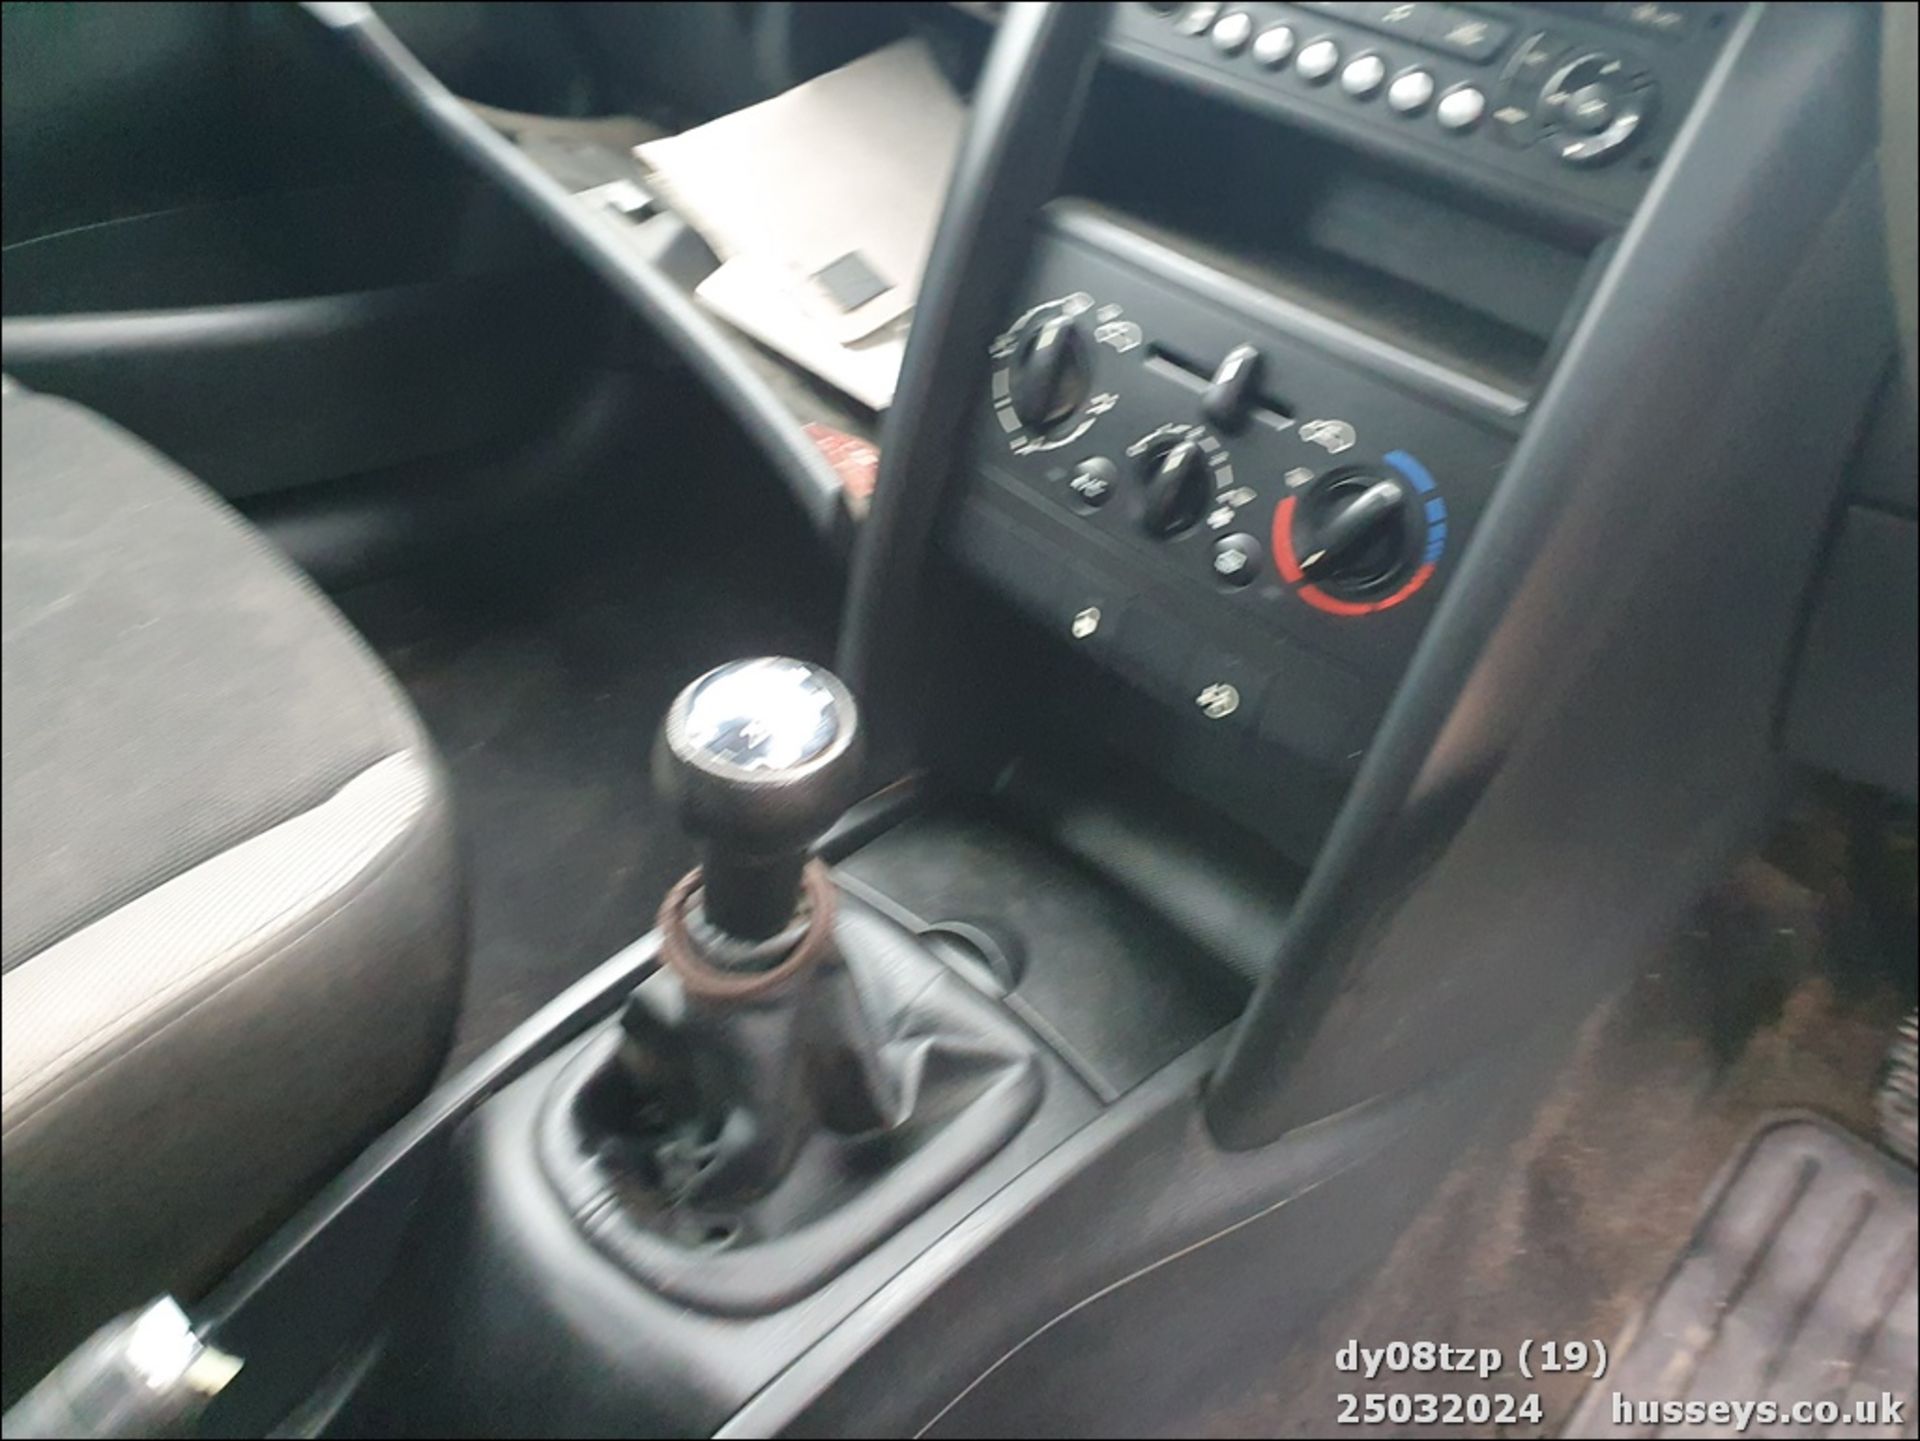 08/08 PEUGEOT 207 S - 1360cc 5dr Hatchback (Black, 109k) - Image 20 of 42